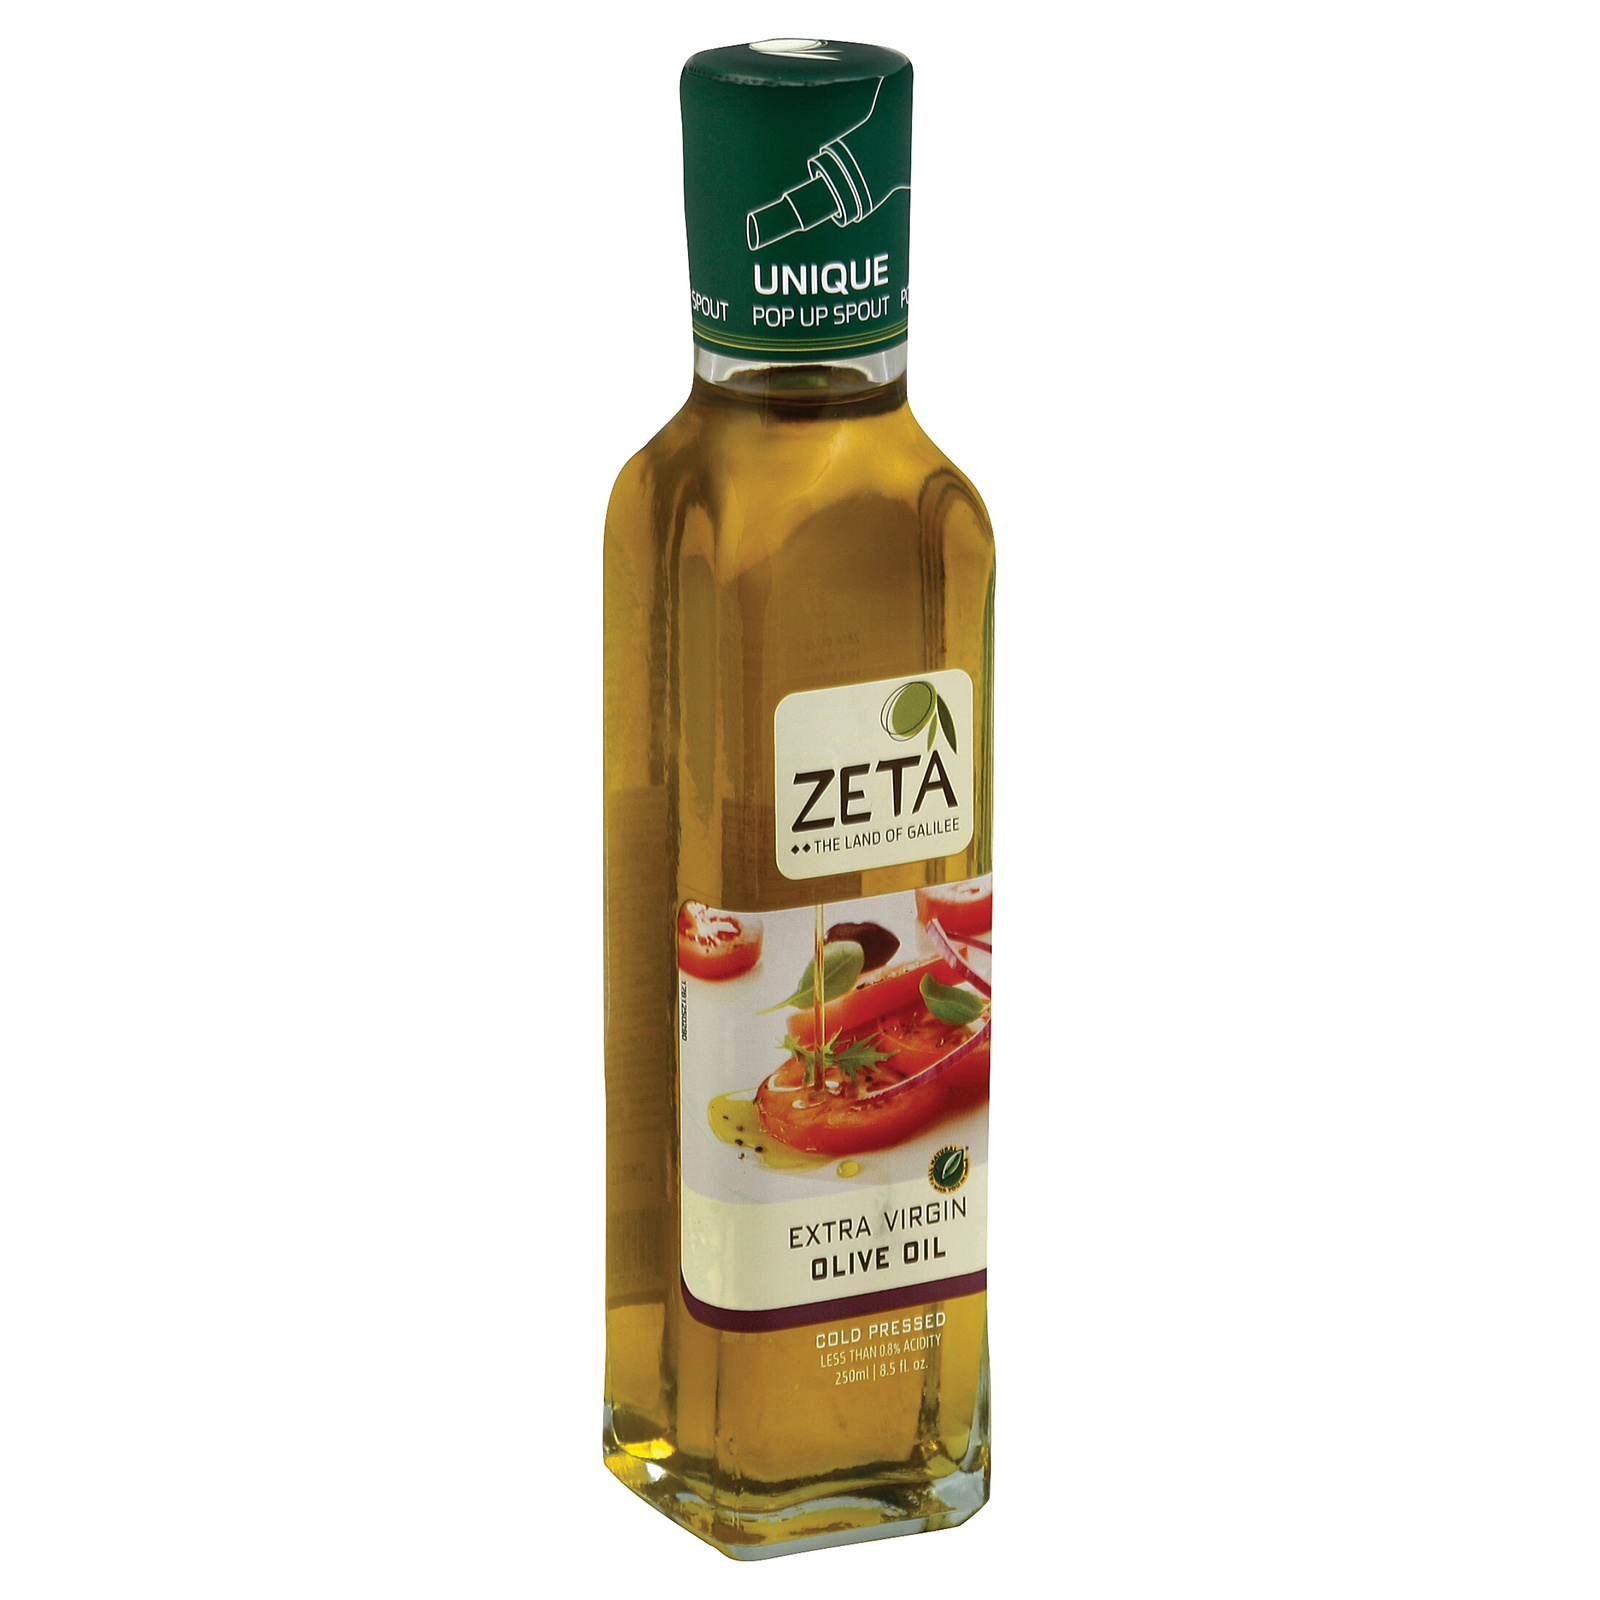 Zeta Oil - Oil Plain X-virgin - 6개 묶음상품 - 8.45 FZ